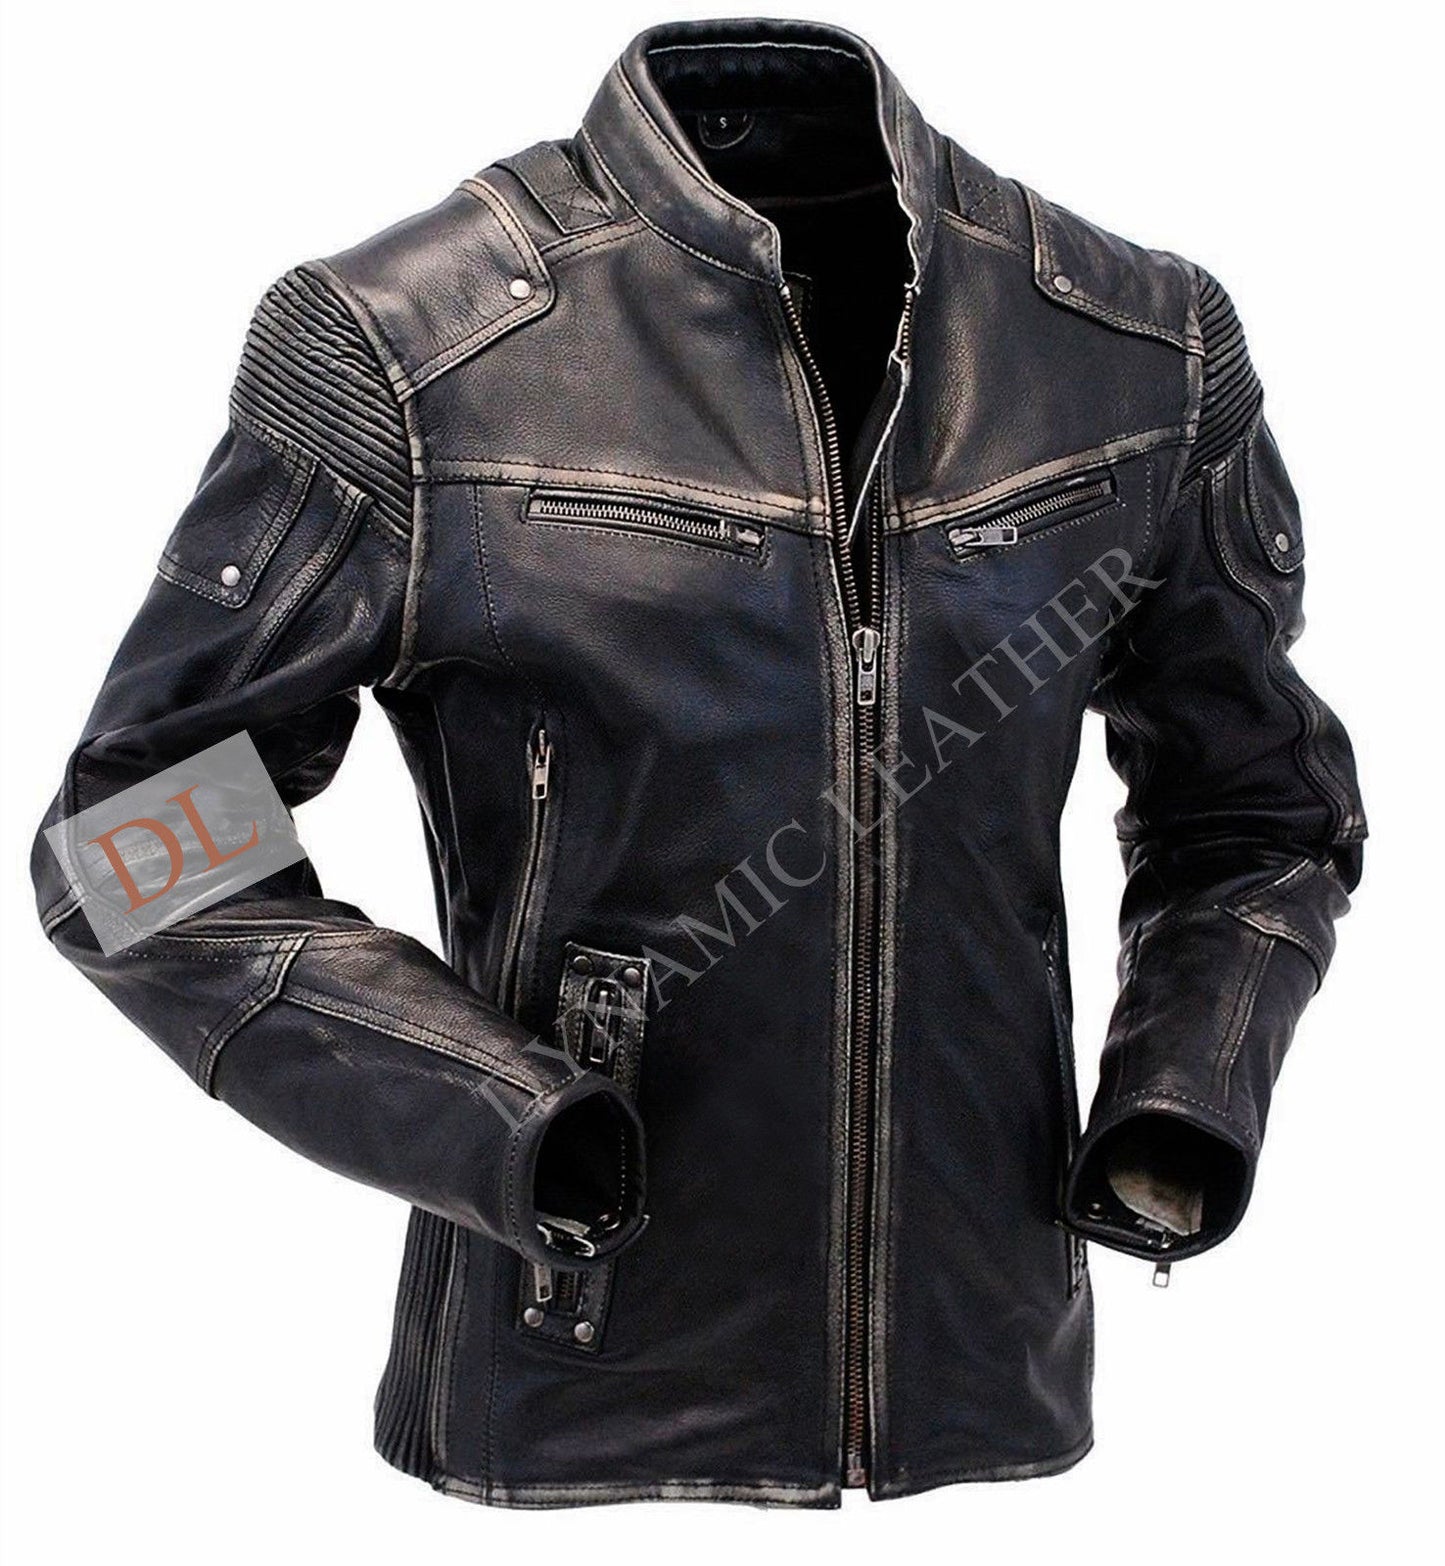 Men's Vintage Biker Style Motorcycle Cafe Racer Distressed Leather Jacket